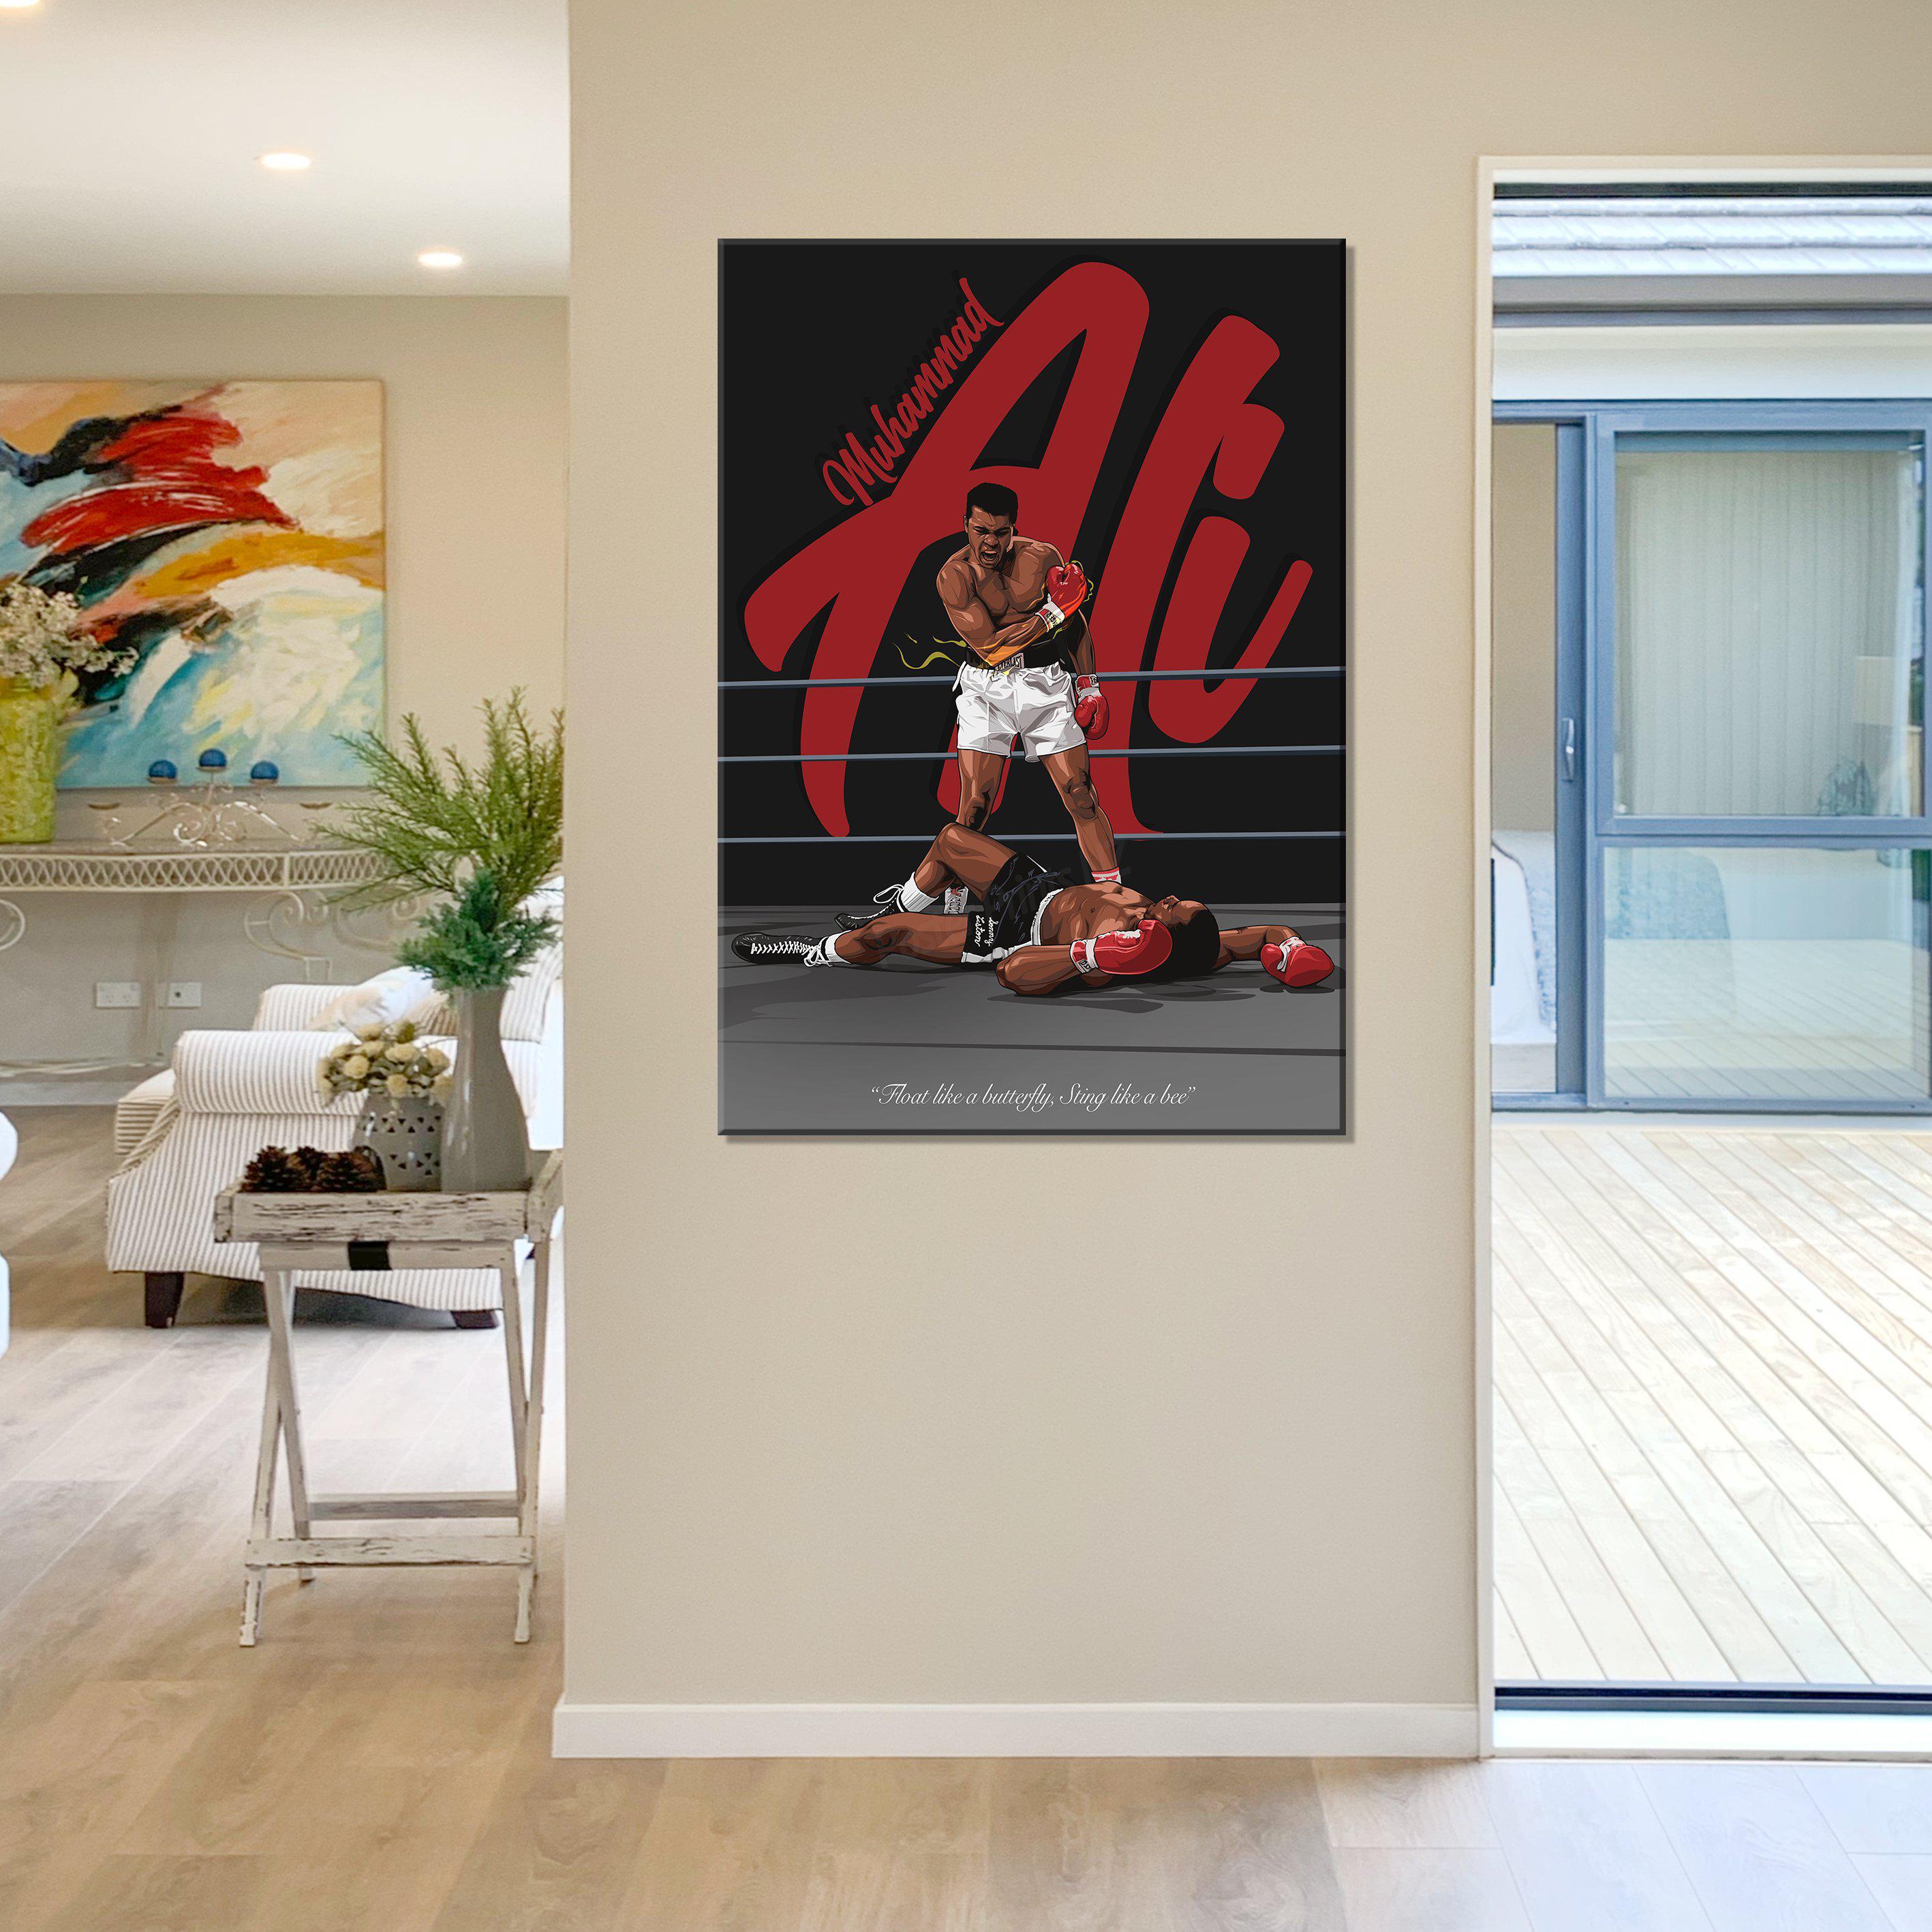 Muhammad Ali Framed Digital Art Canvas - Poster Prints NZ